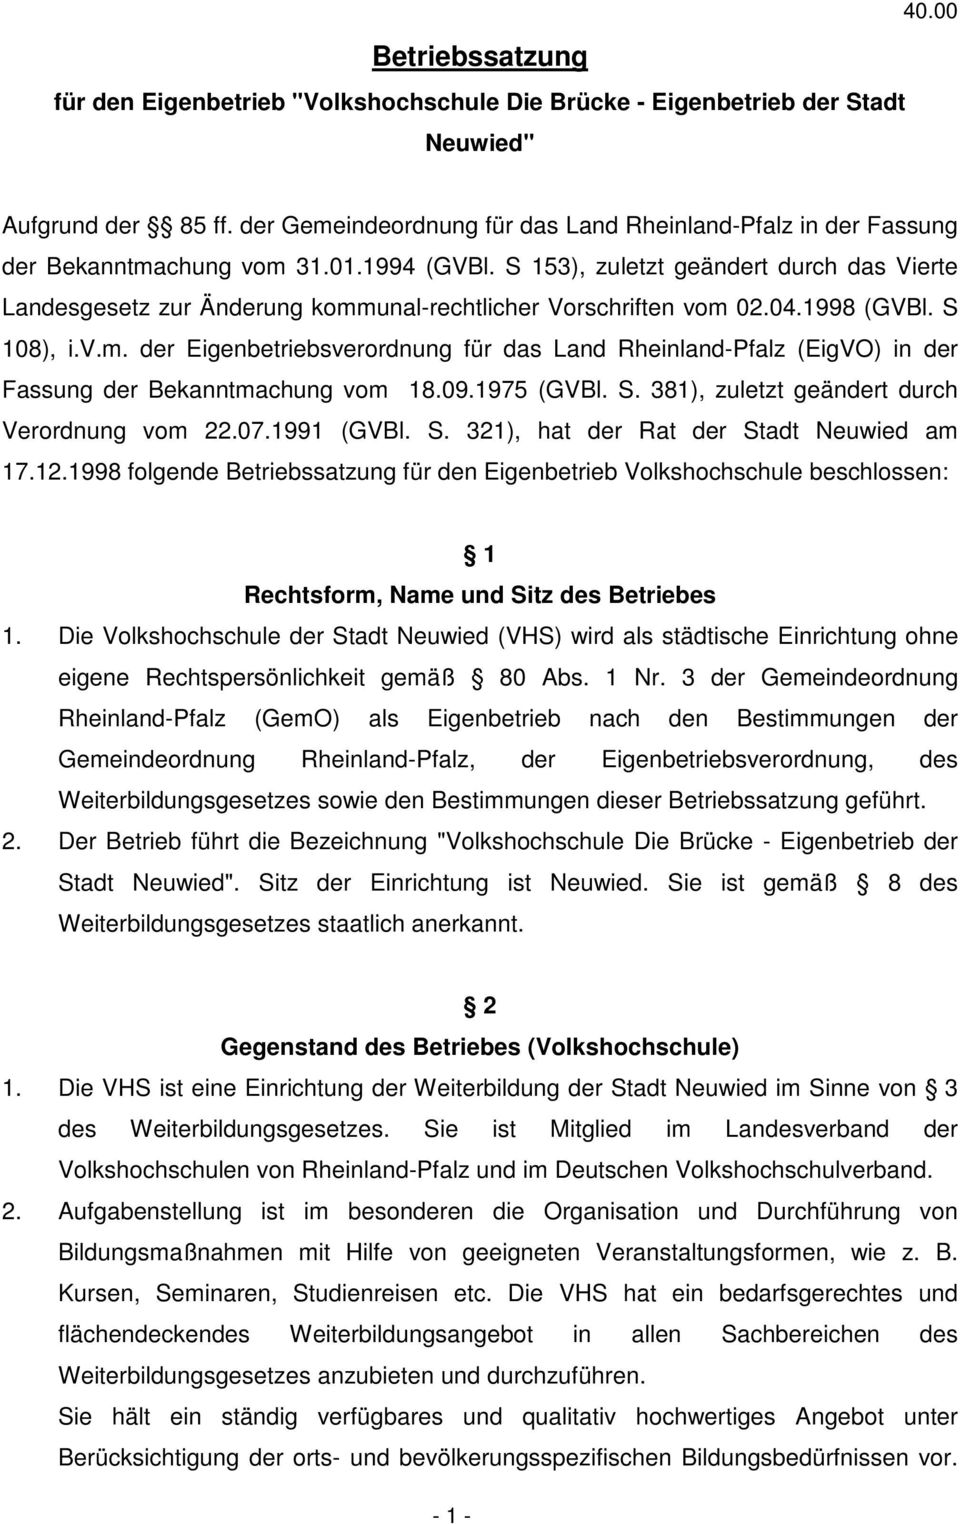 S 153), zuletzt geändert durch das Vierte Landesgesetz zur Änderung kommunal-rechtlicher Vorschriften vom 02.04.1998 (GVBl. S 108), i.v.m. der Eigenbetriebsverordnung für das Land Rheinland-Pfalz (EigVO) in der Fassung der Bekanntmachung vom 18.